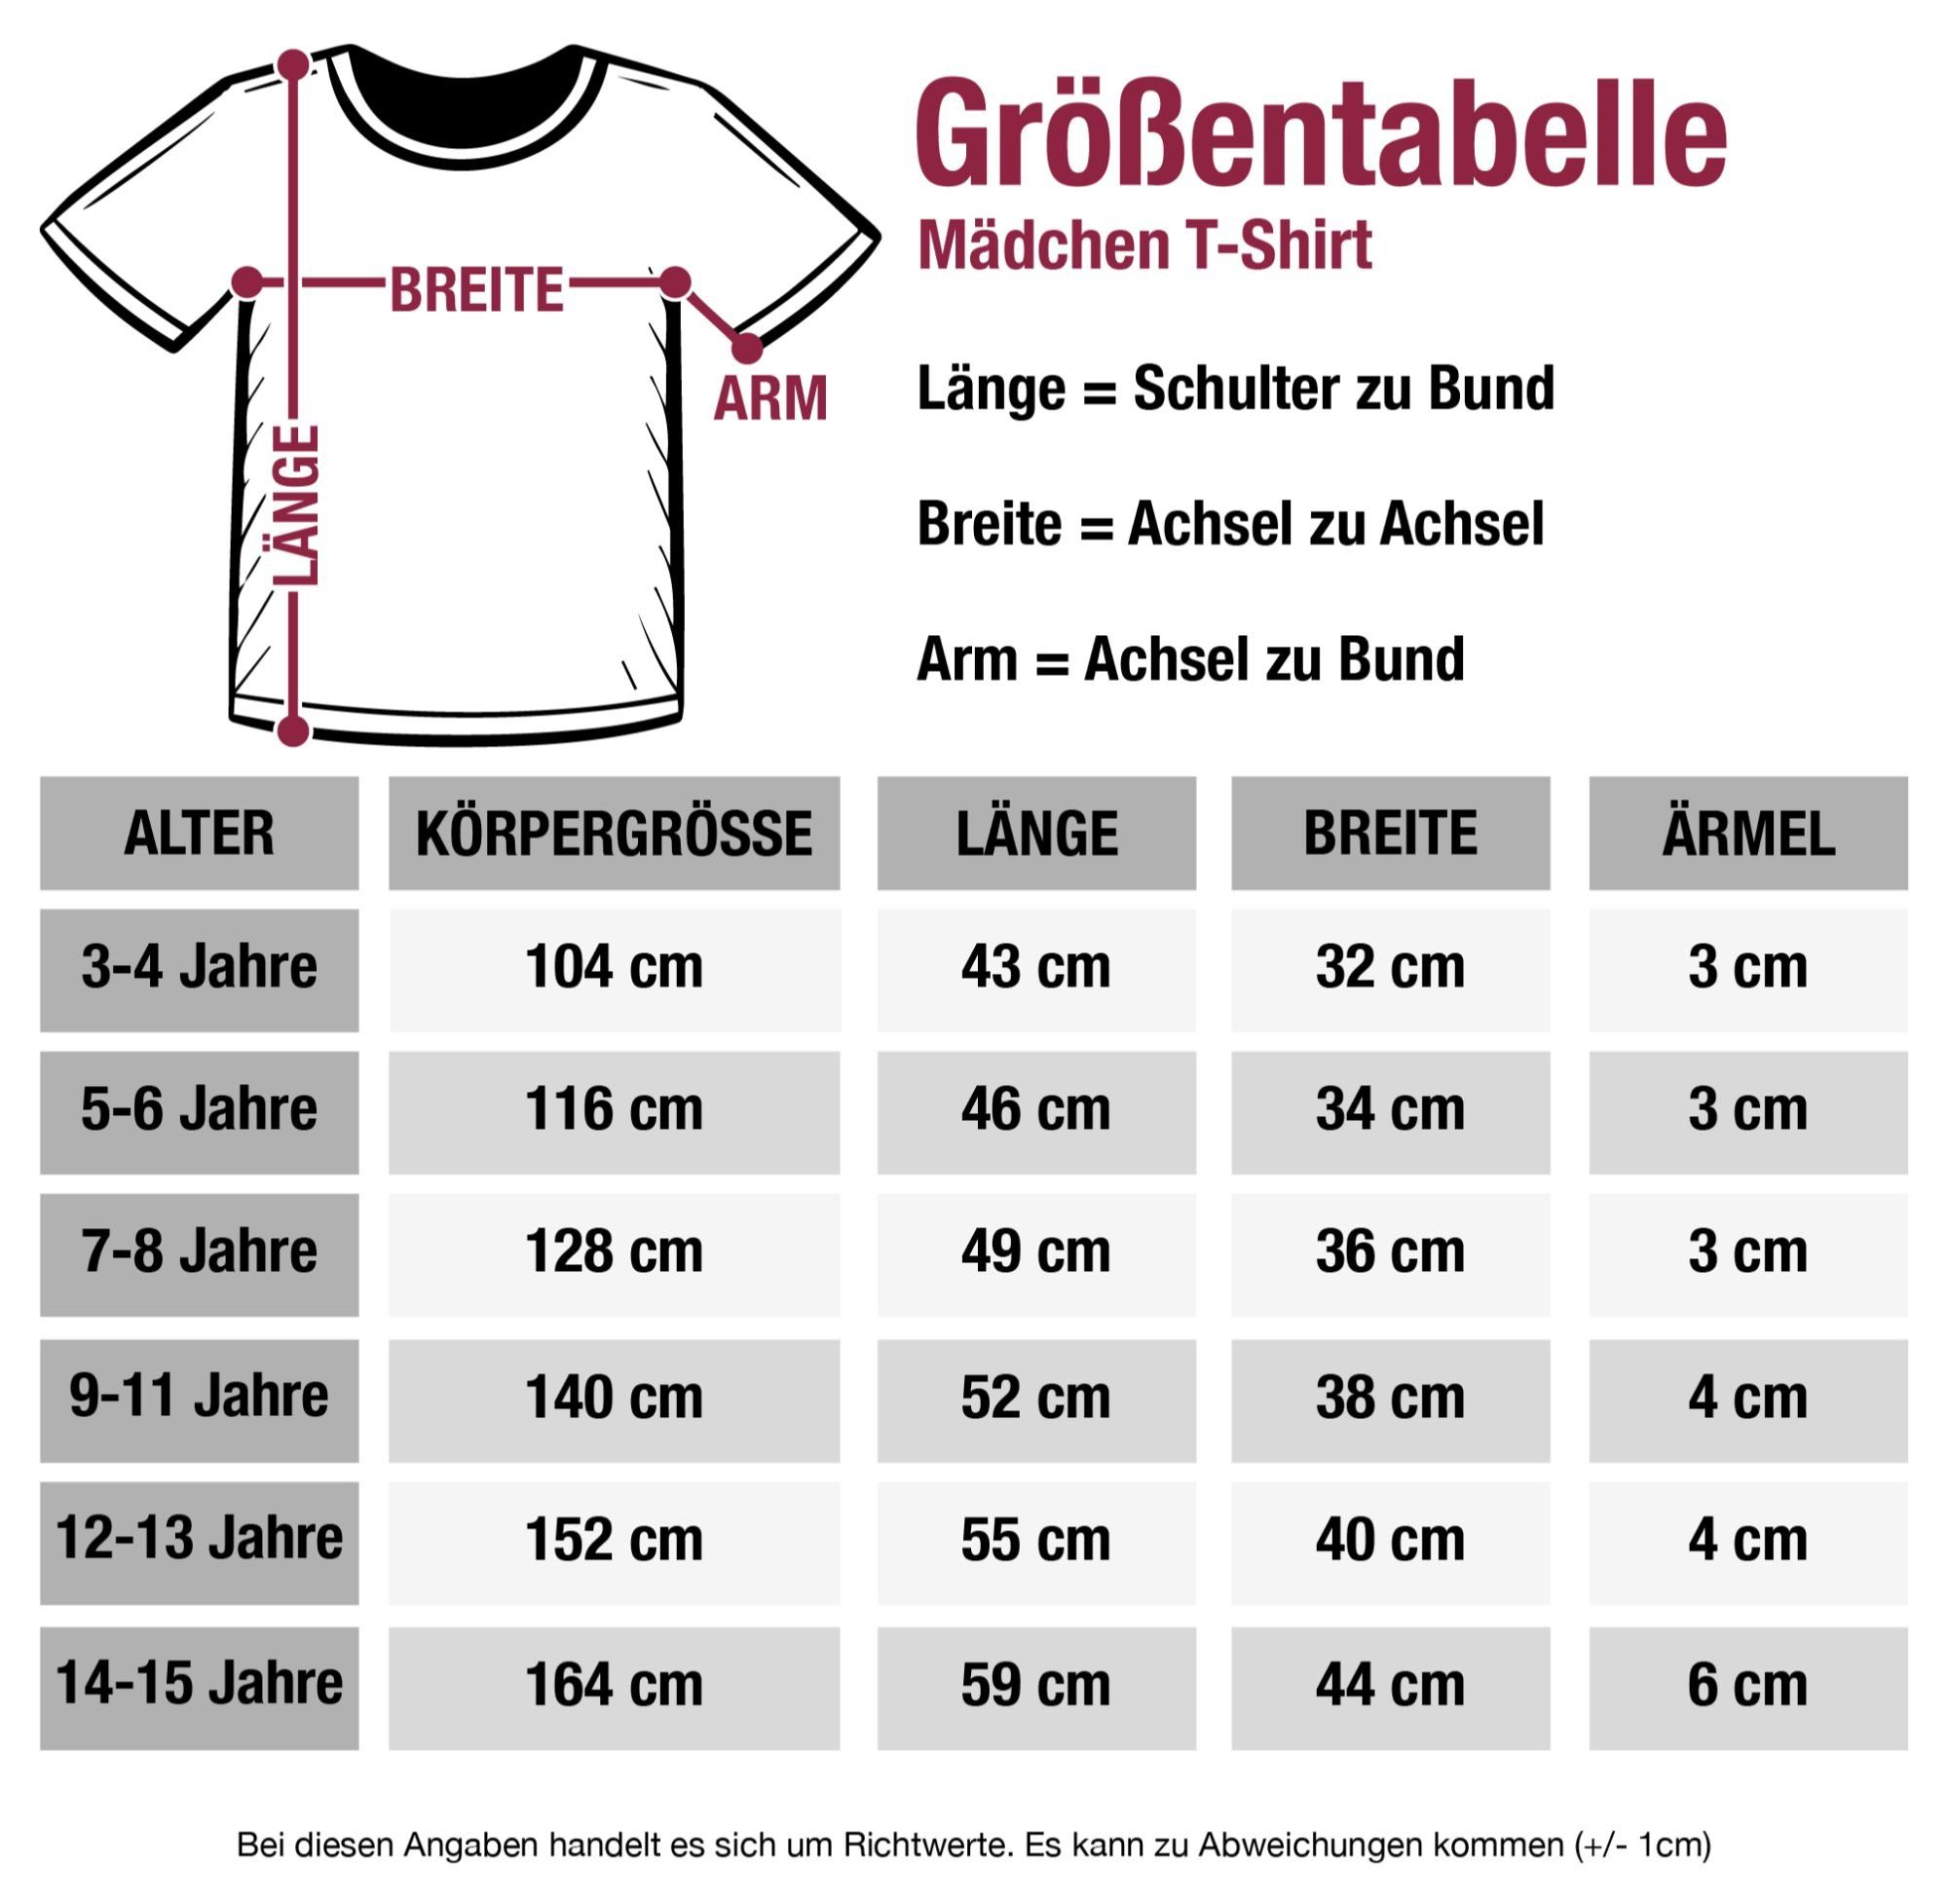 Einschulung Kindergarten Tschüss 1 T-Shirt Fuchsia Mädchen Kita Wars Das Shirtracer